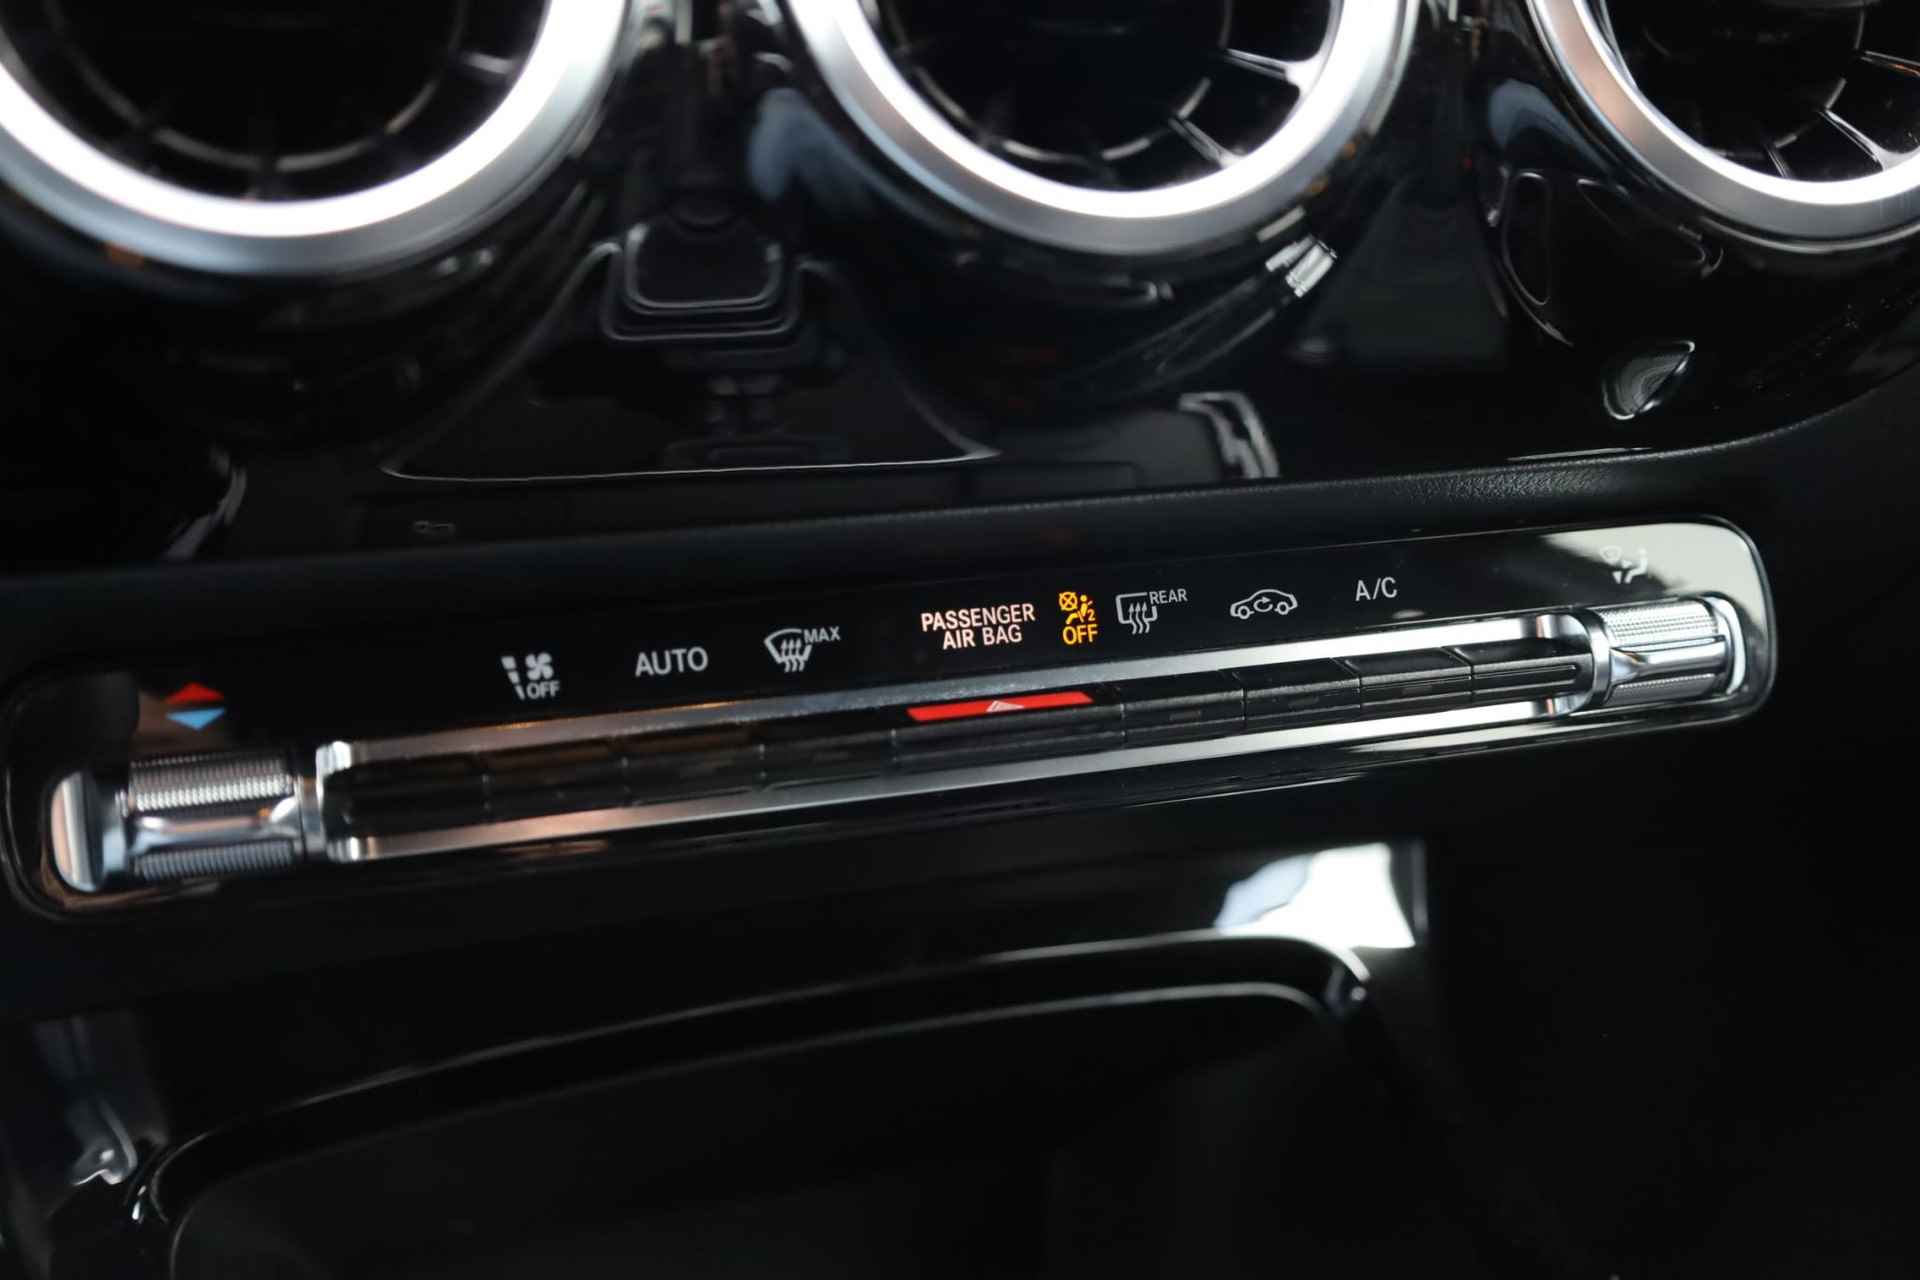 Mercedes-Benz A-klasse 200 Business Solution AMG 120KW/163PK automaat, Leder / alcantara, winterset LMV digitaal dashboard, navigatie, LED verlichting voor en achter, 18" LMV, stoelverwarming, parkeersensoren voor en achter, AMG bumpers - 30/44